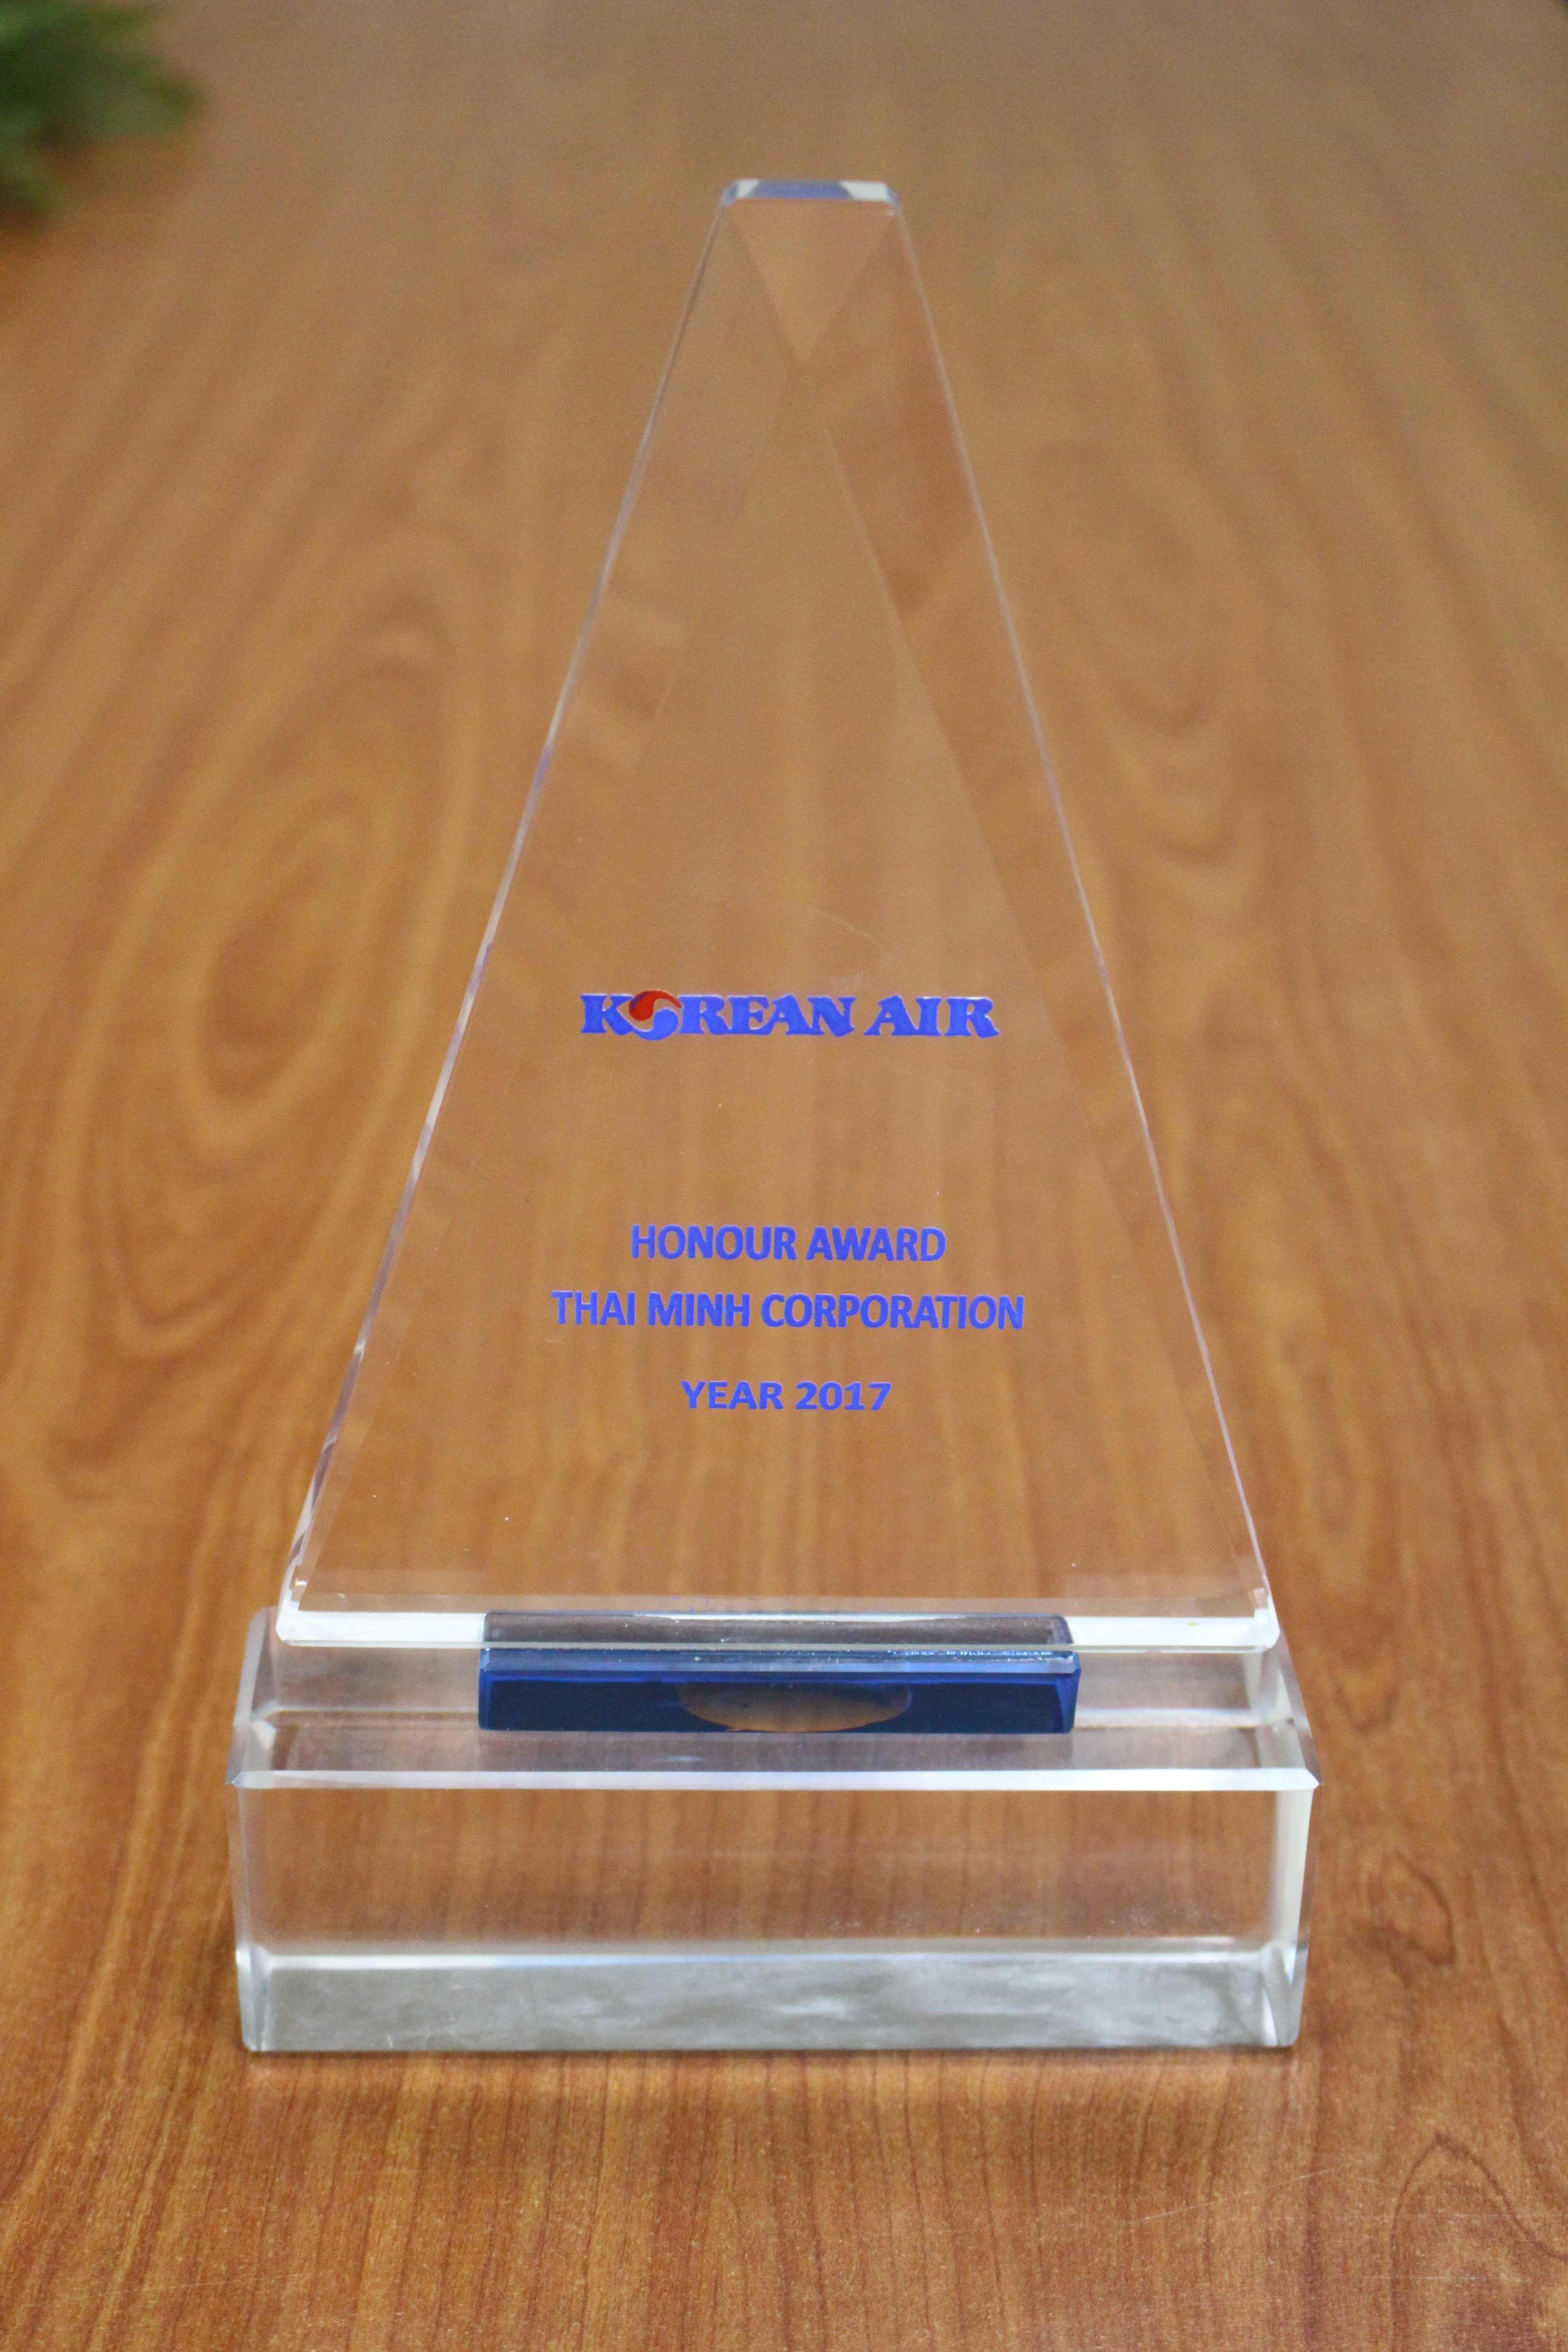 TMC achieved Honour Award - Korean Air